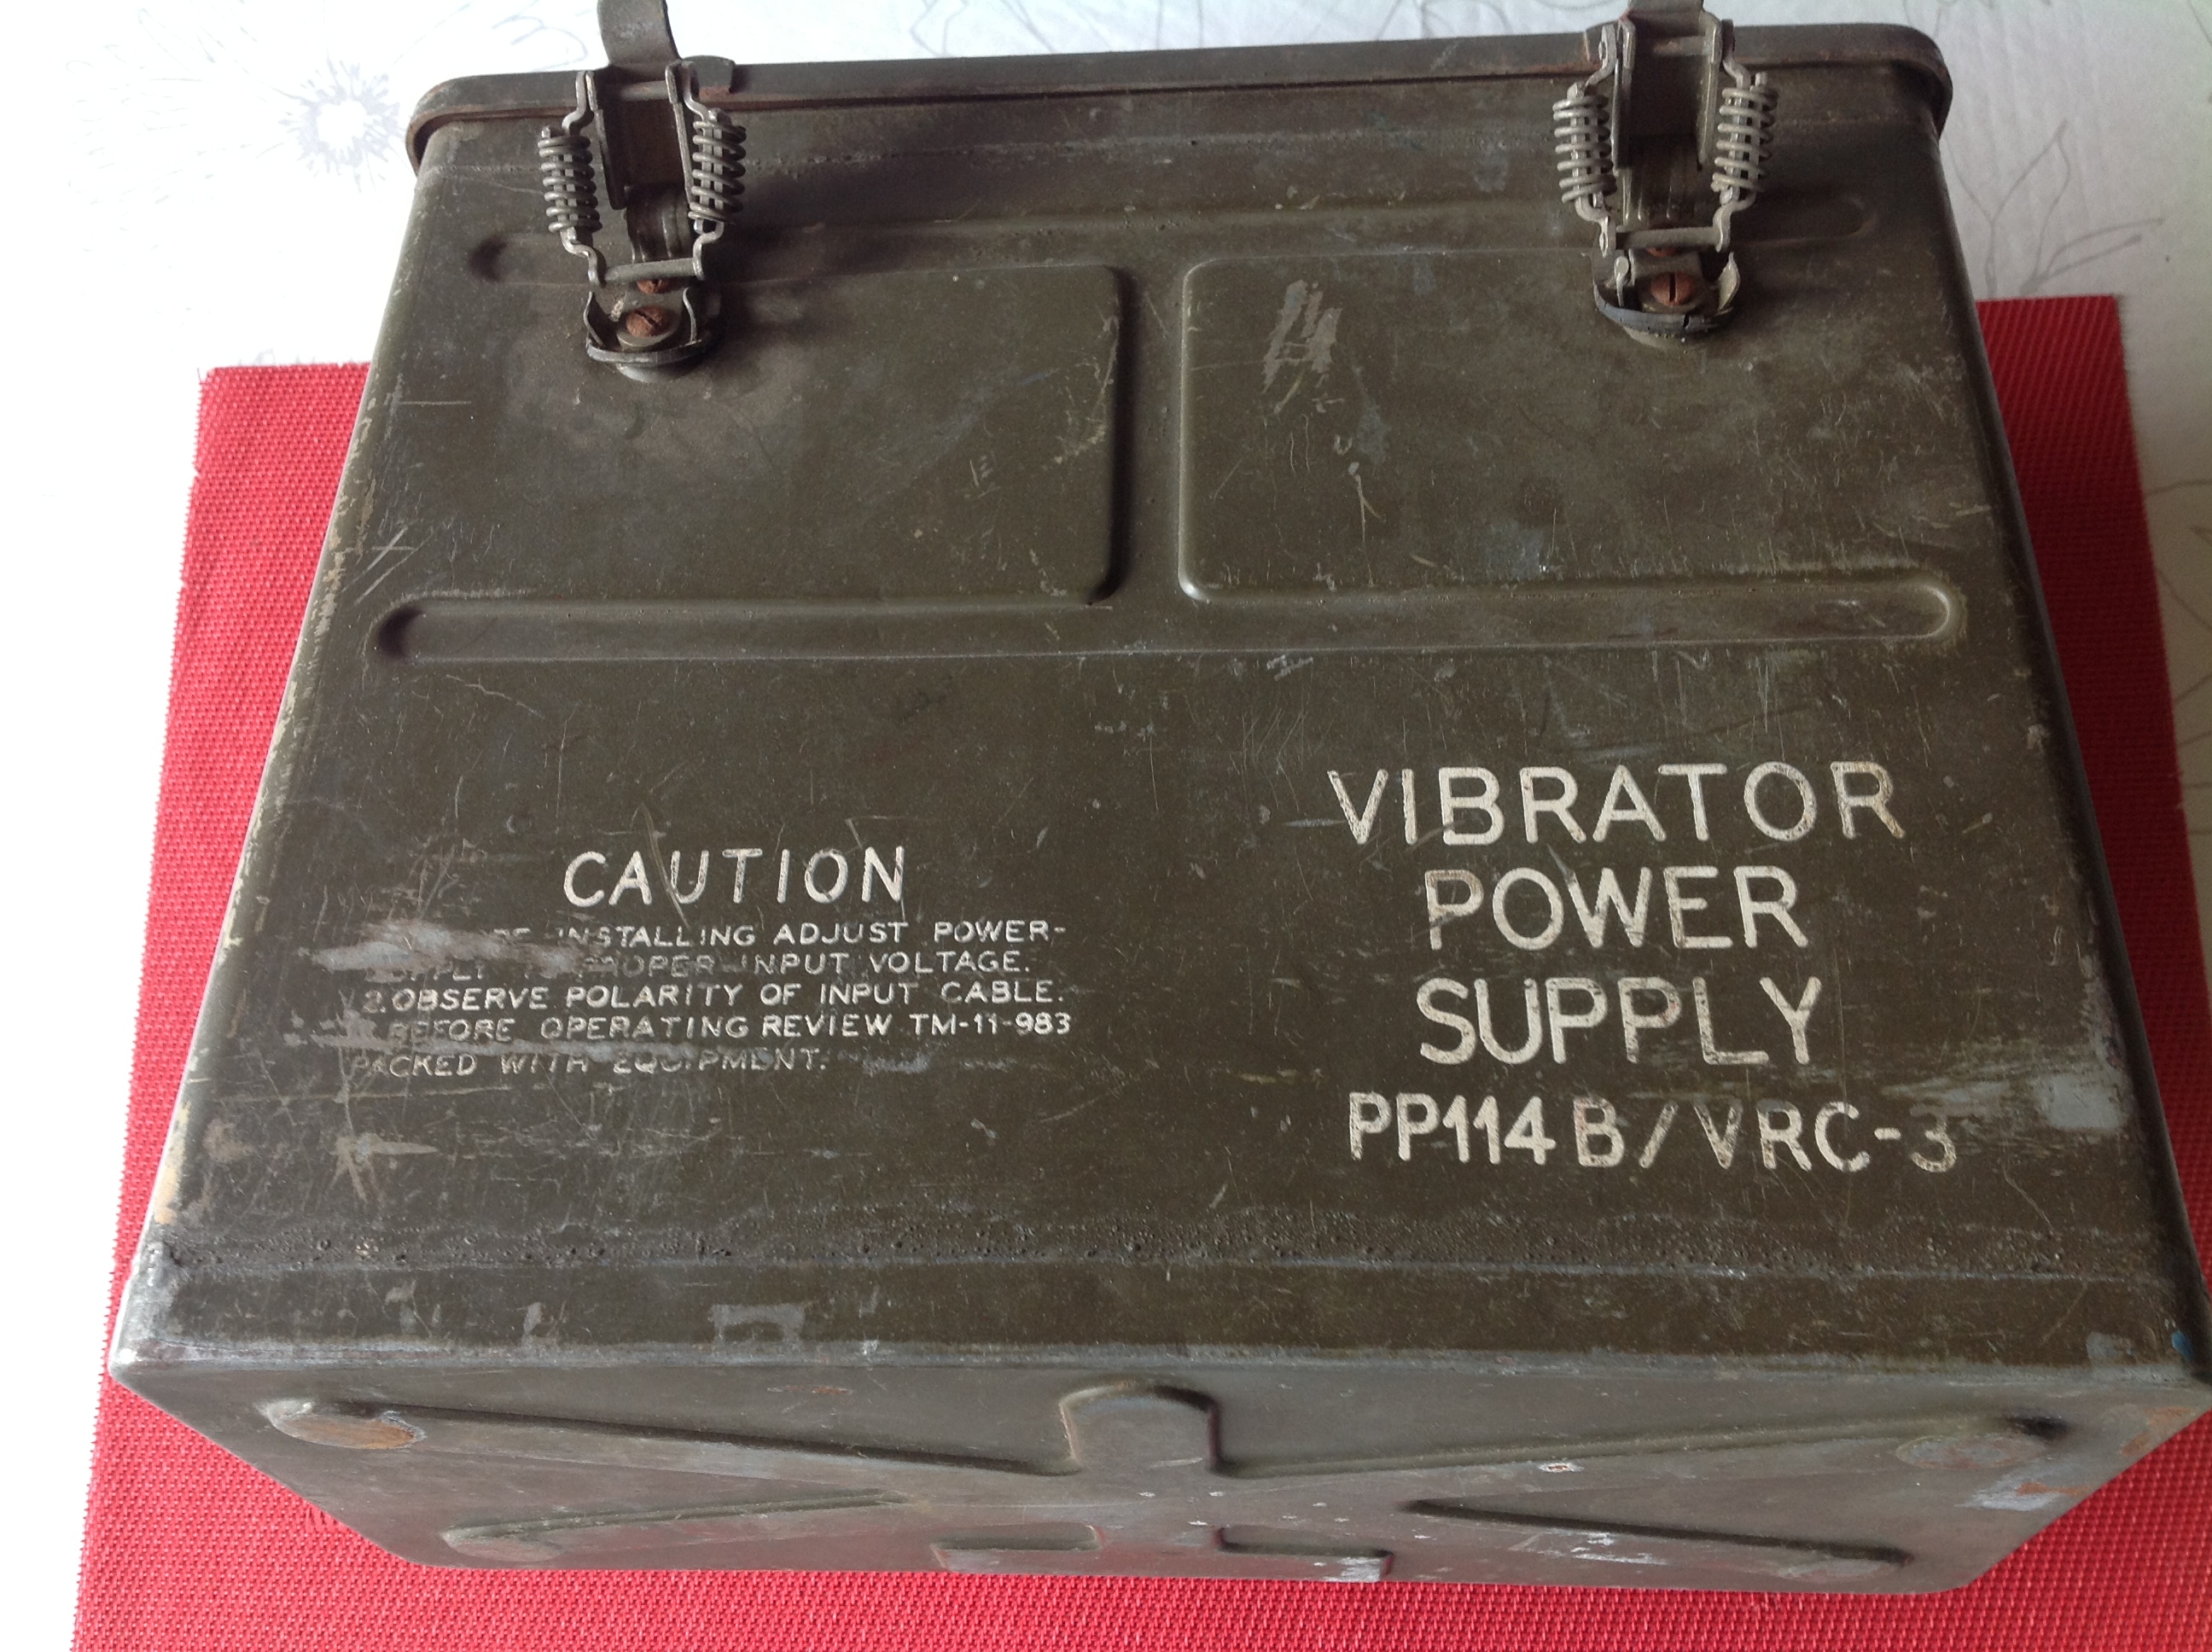 Batteriebehälter für PP114B/VRC-3